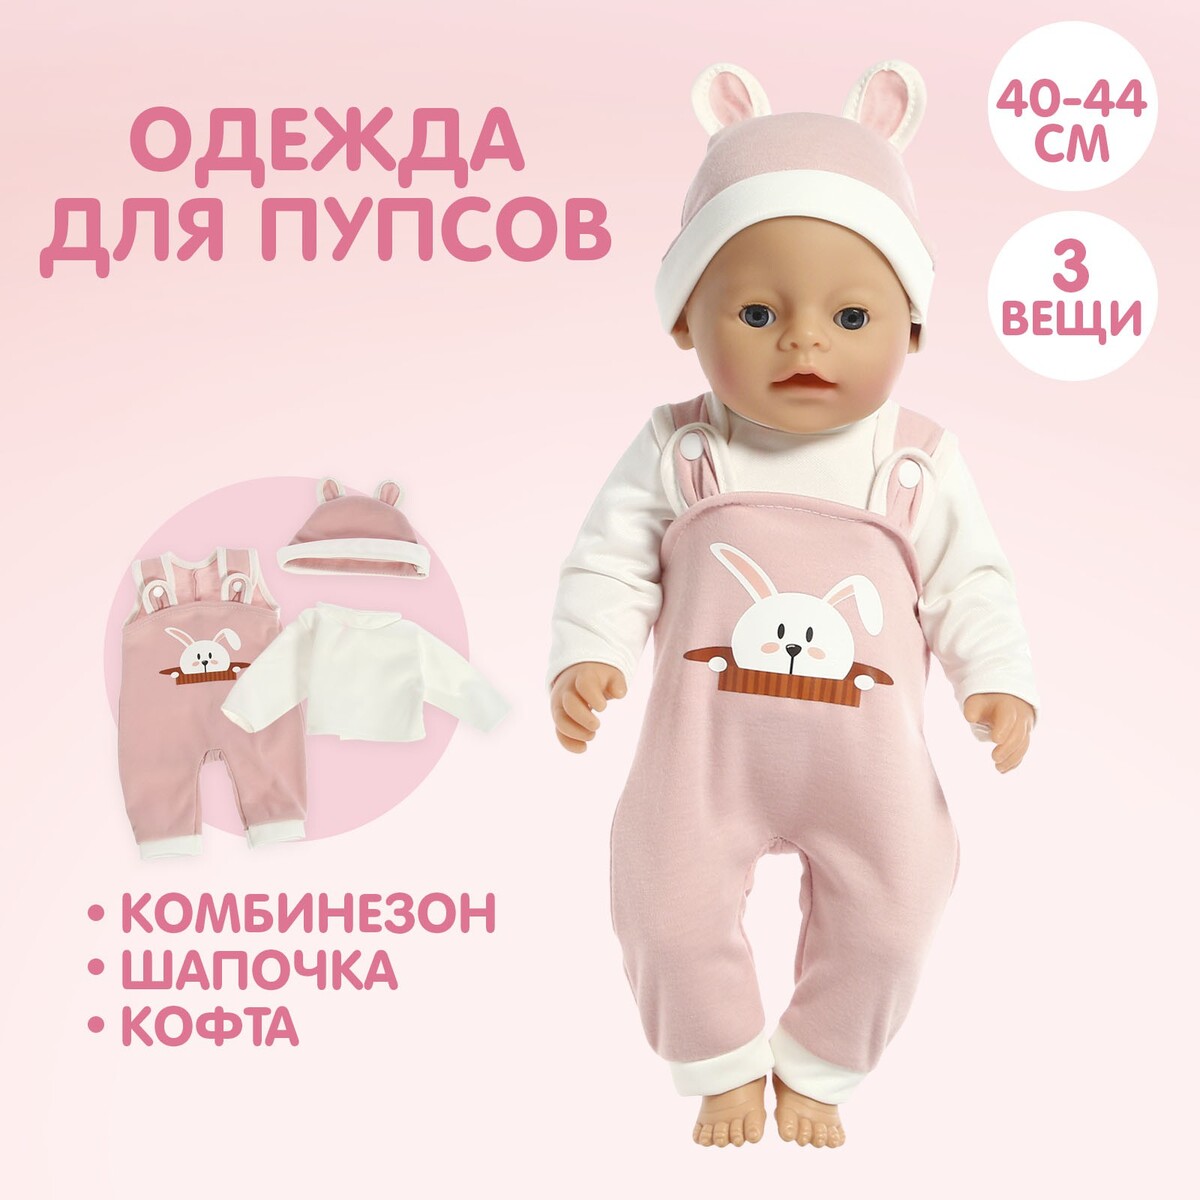 Пижама для кукол 40-44 см, 3 вещи, текстиль, на липучках вещи и вещицы